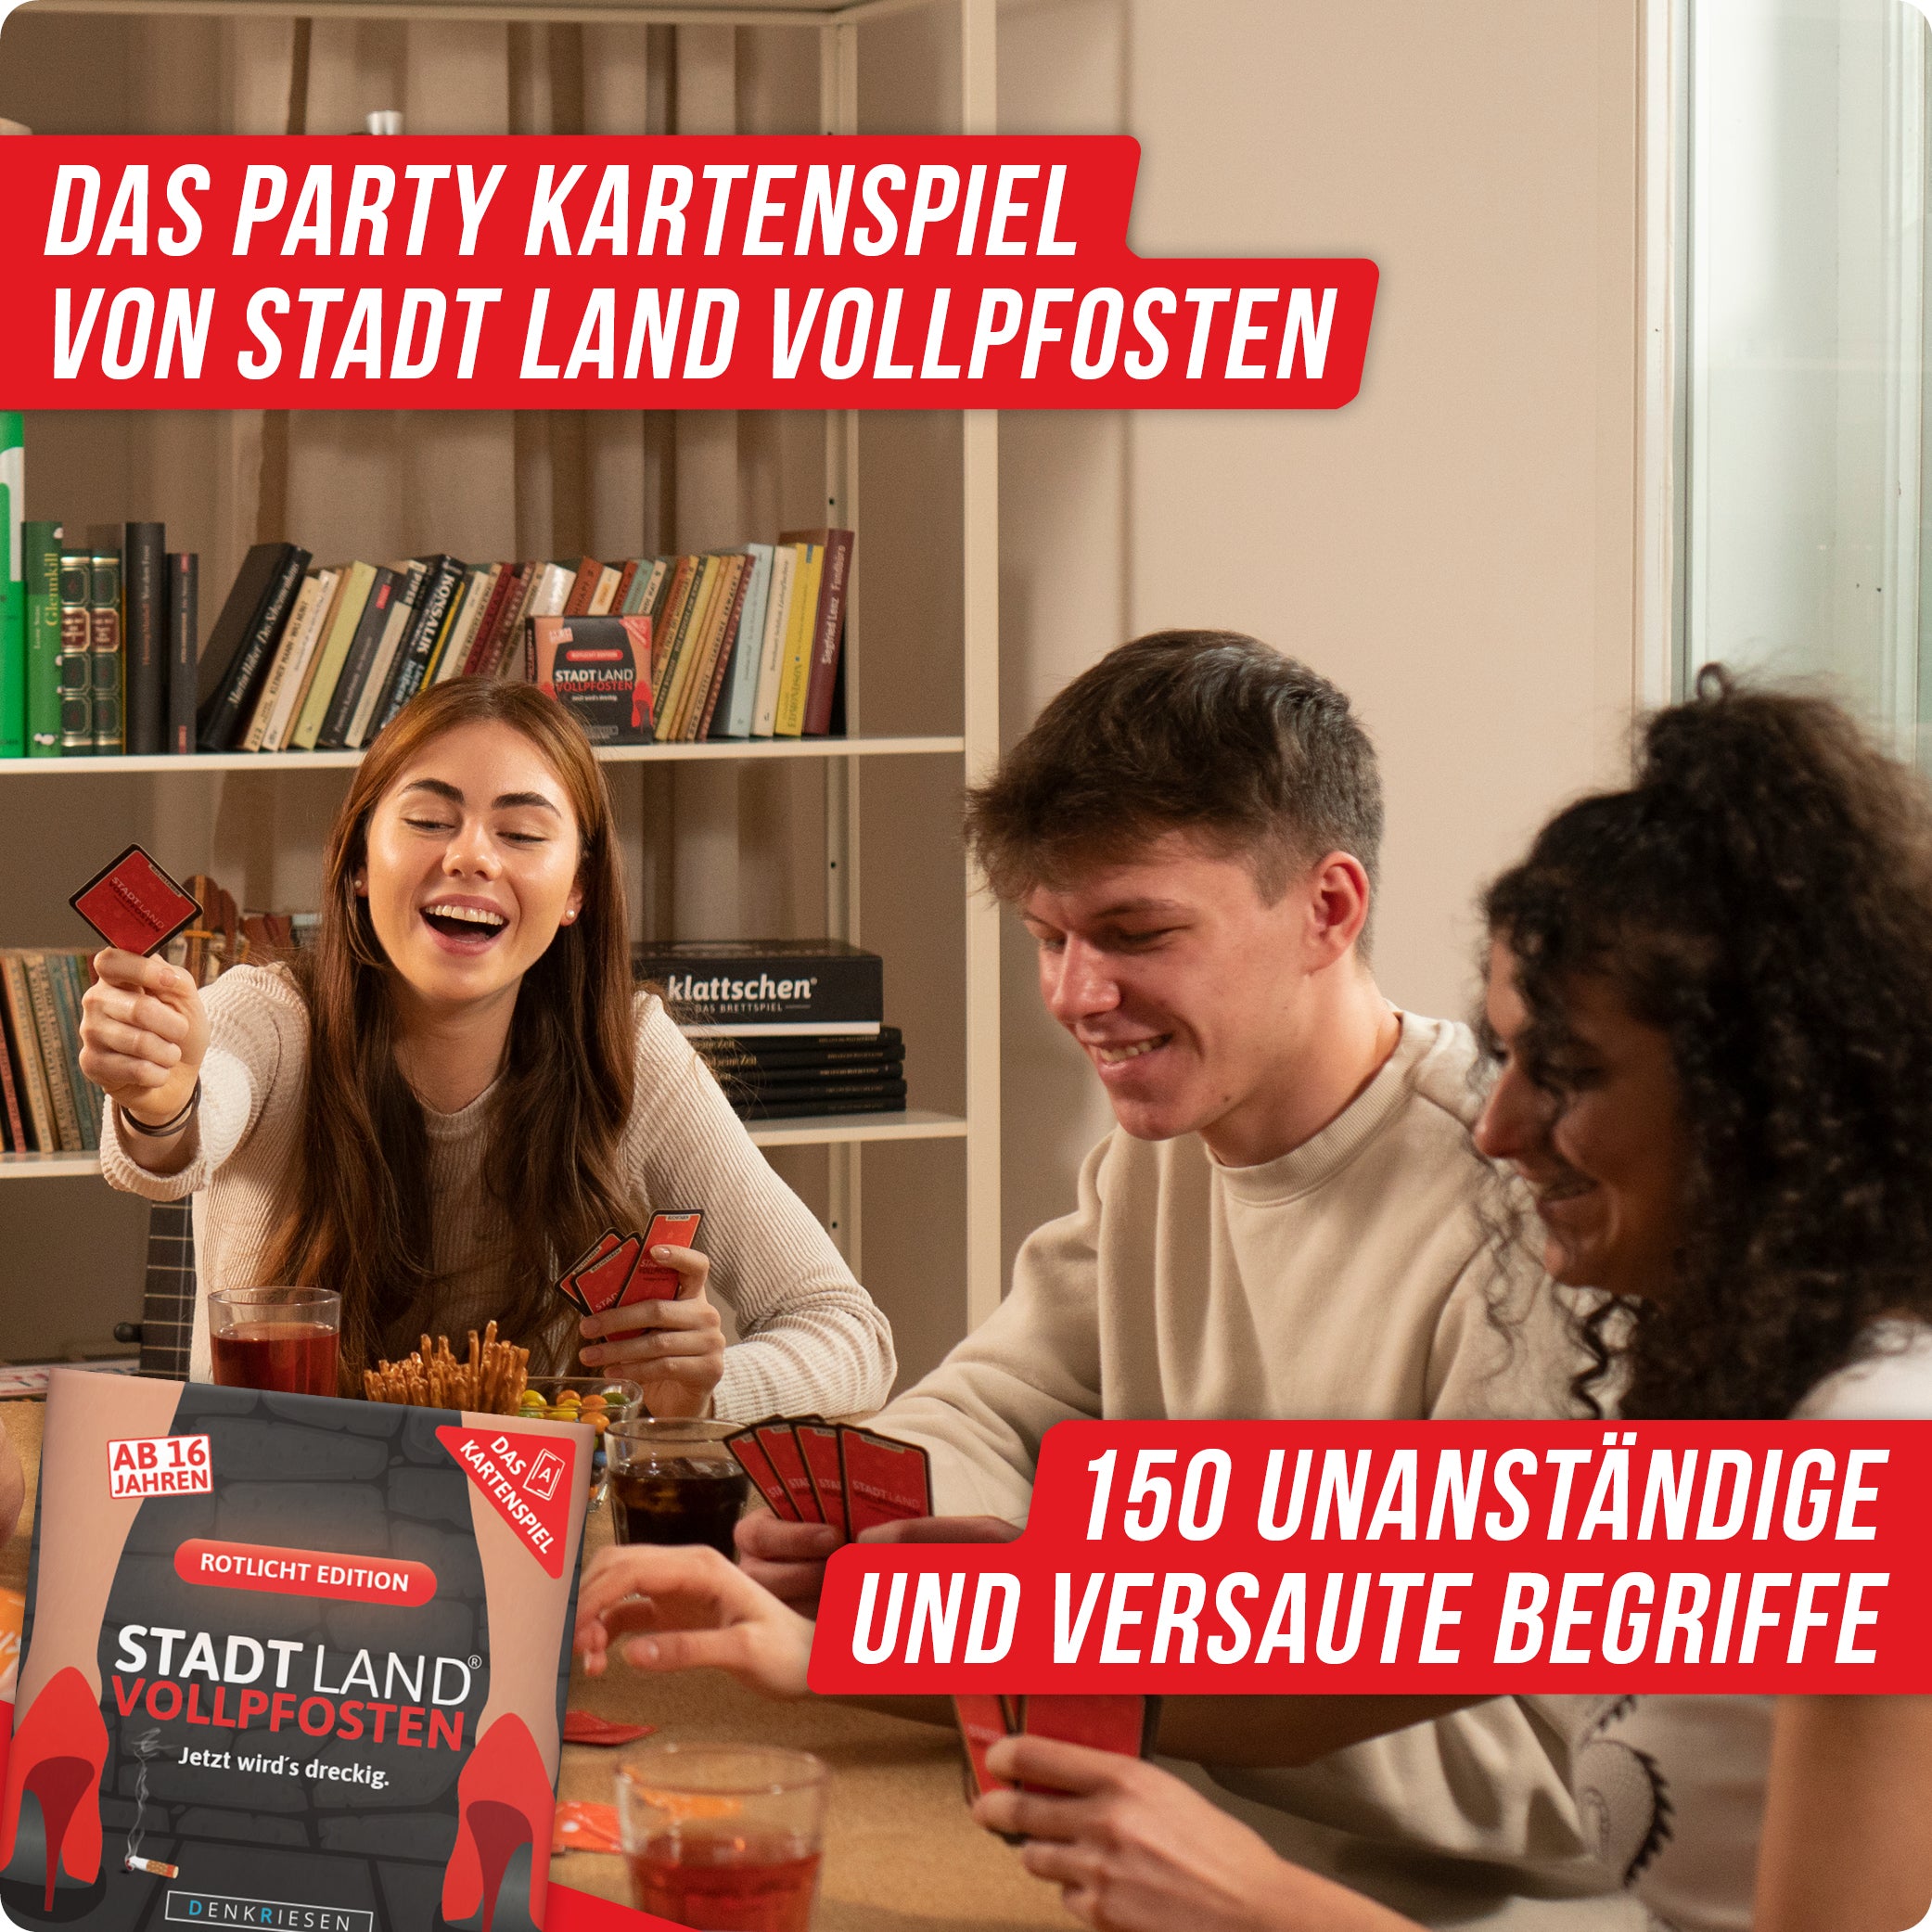 Stadt Land Vollpfosten® Rotlicht Edition – "Jetzt wird's dreckig." | Das Kartenspiel